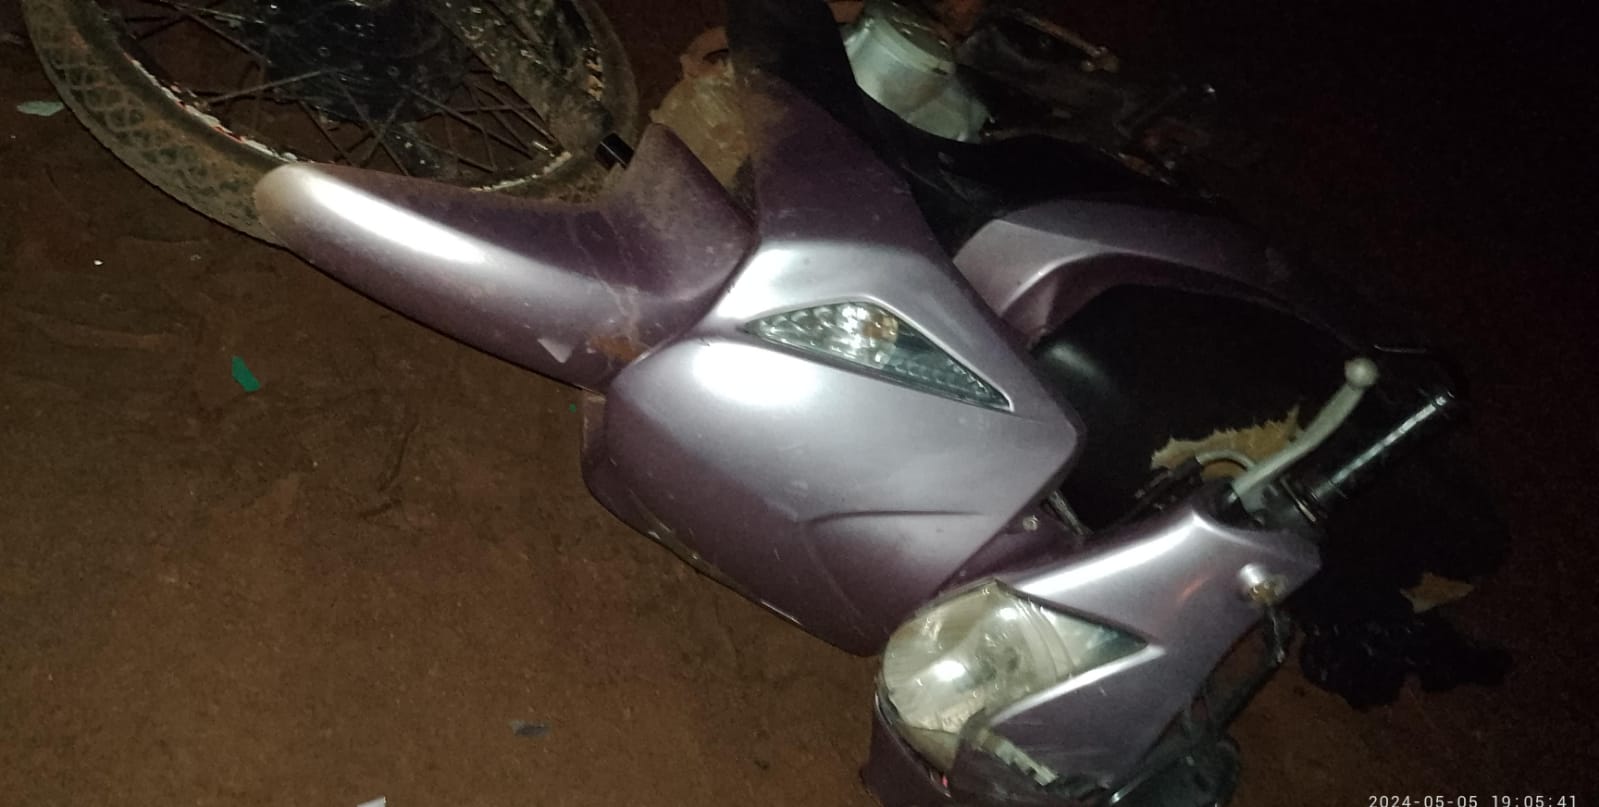 Condutor fica gravemente ferido após sofrer queda de moto em Marmeleiro